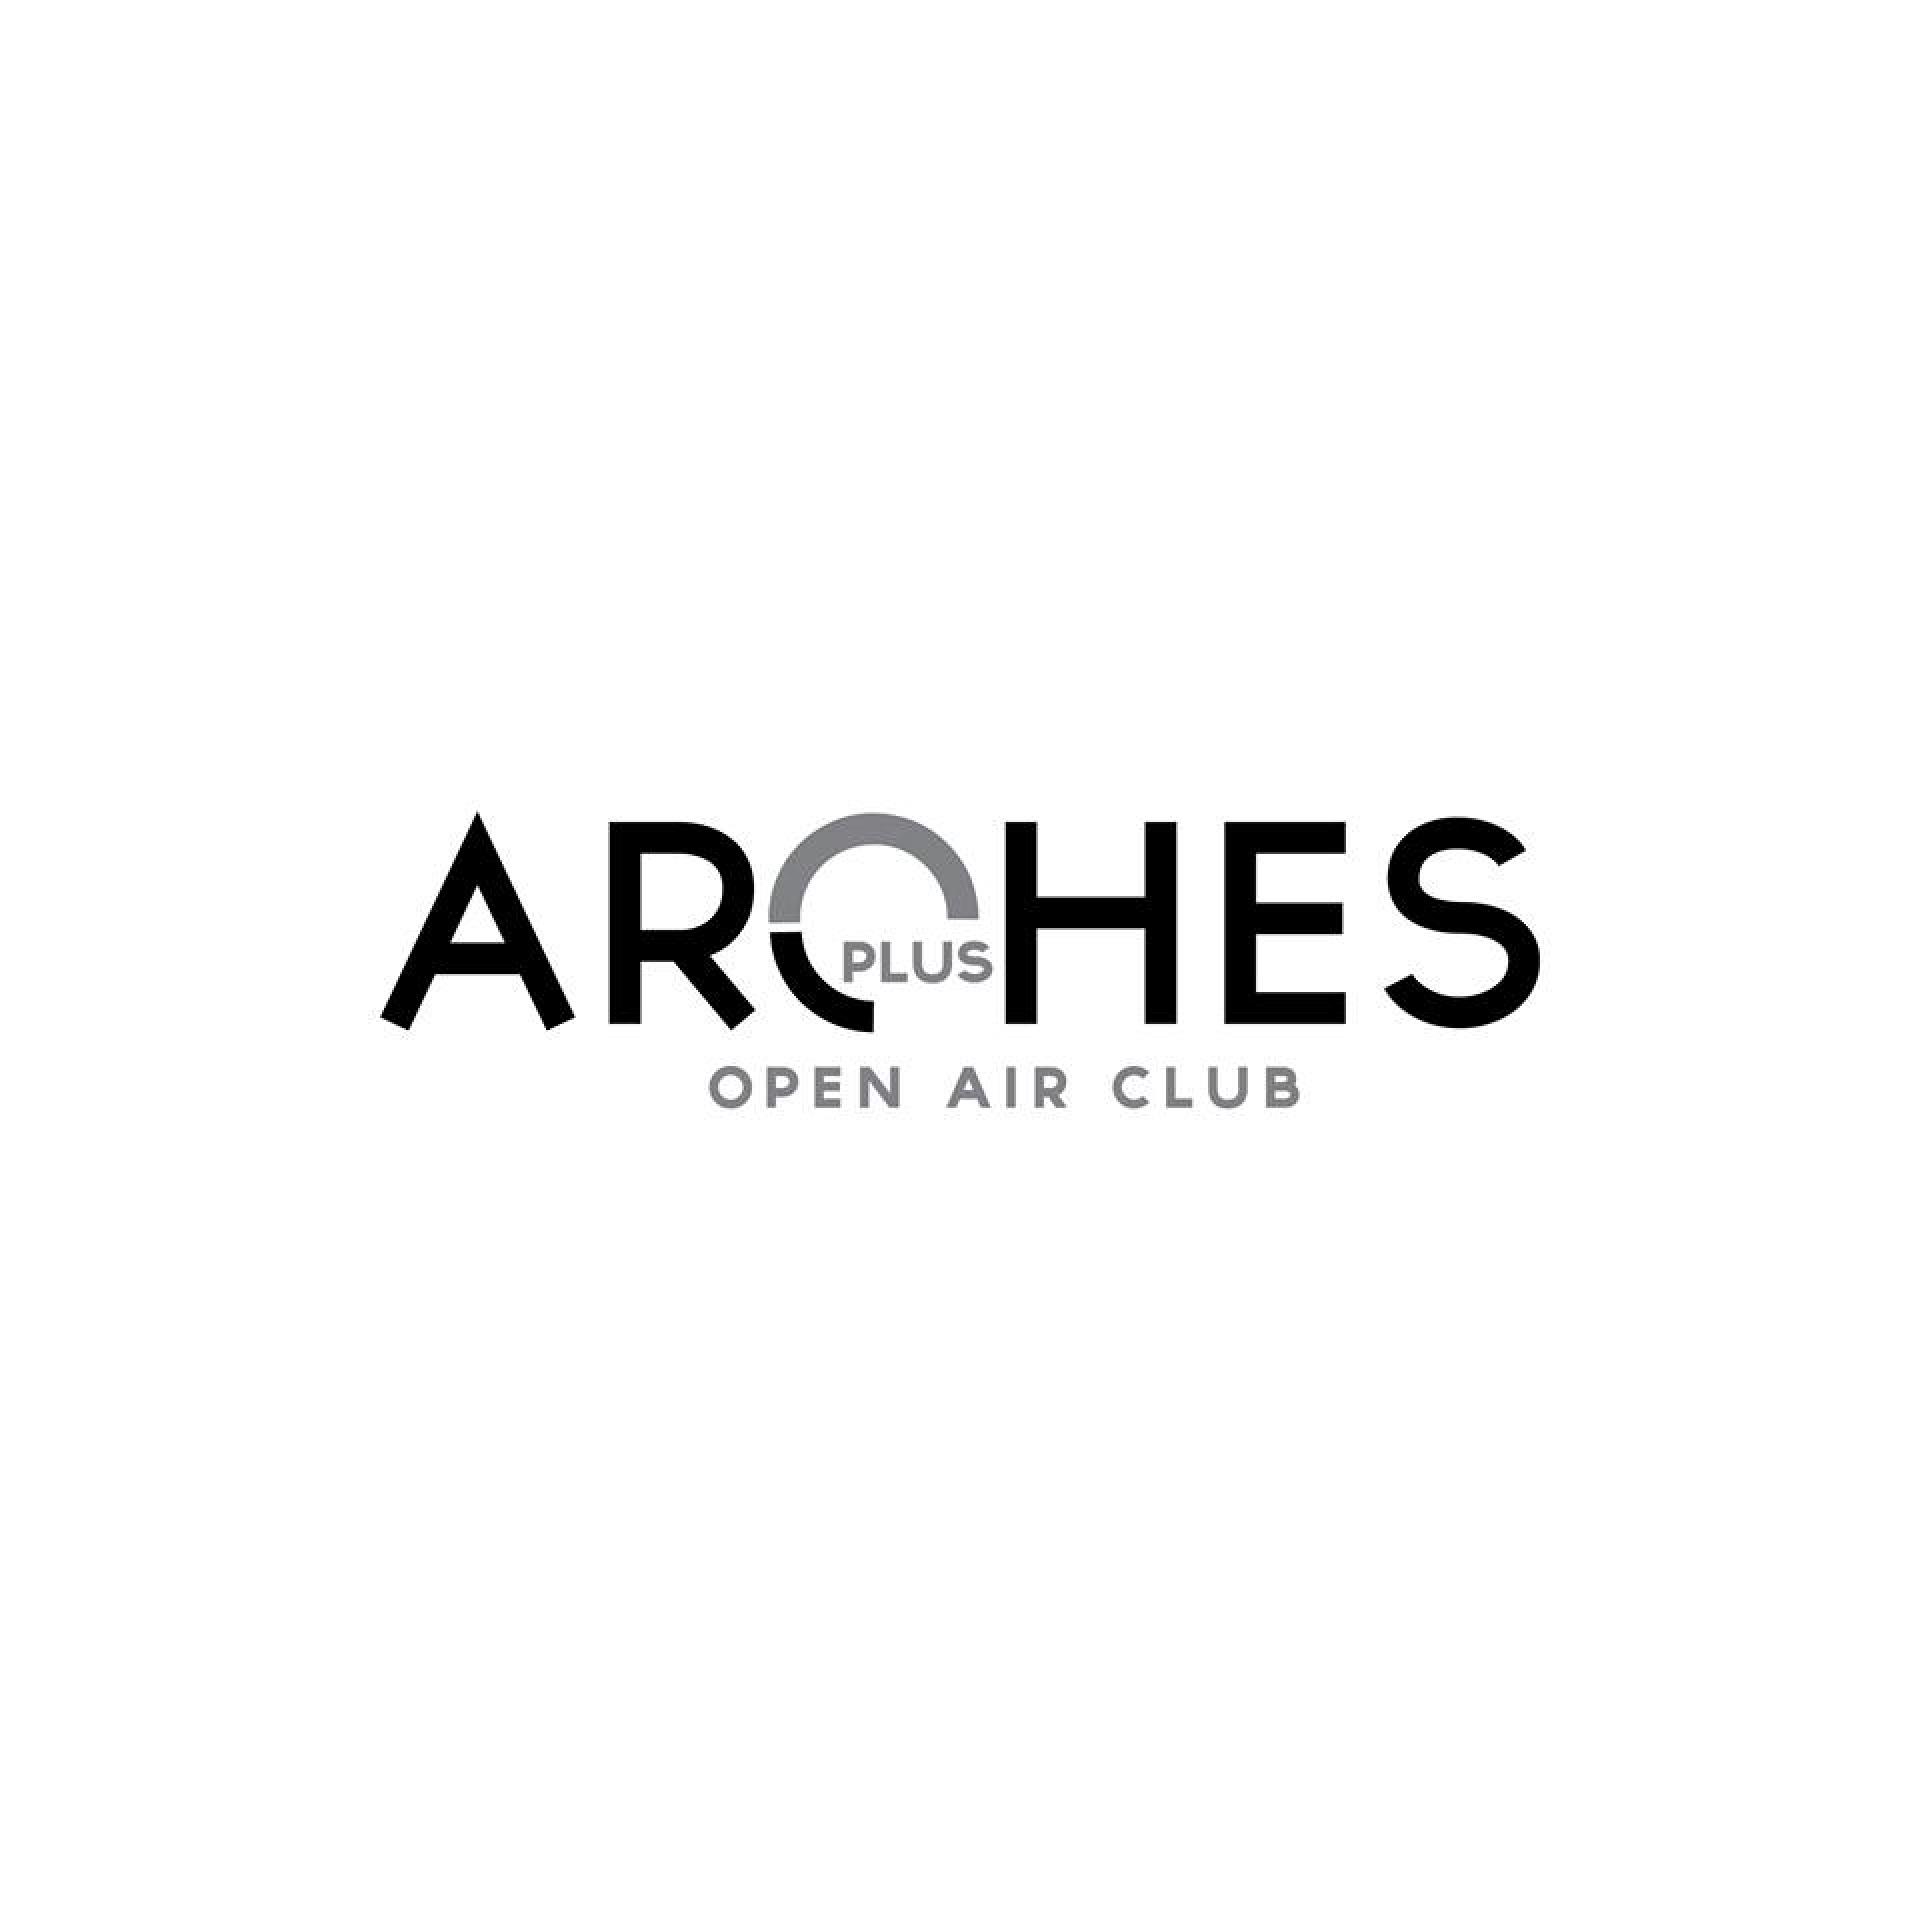 Arches Plus - Open Air Club